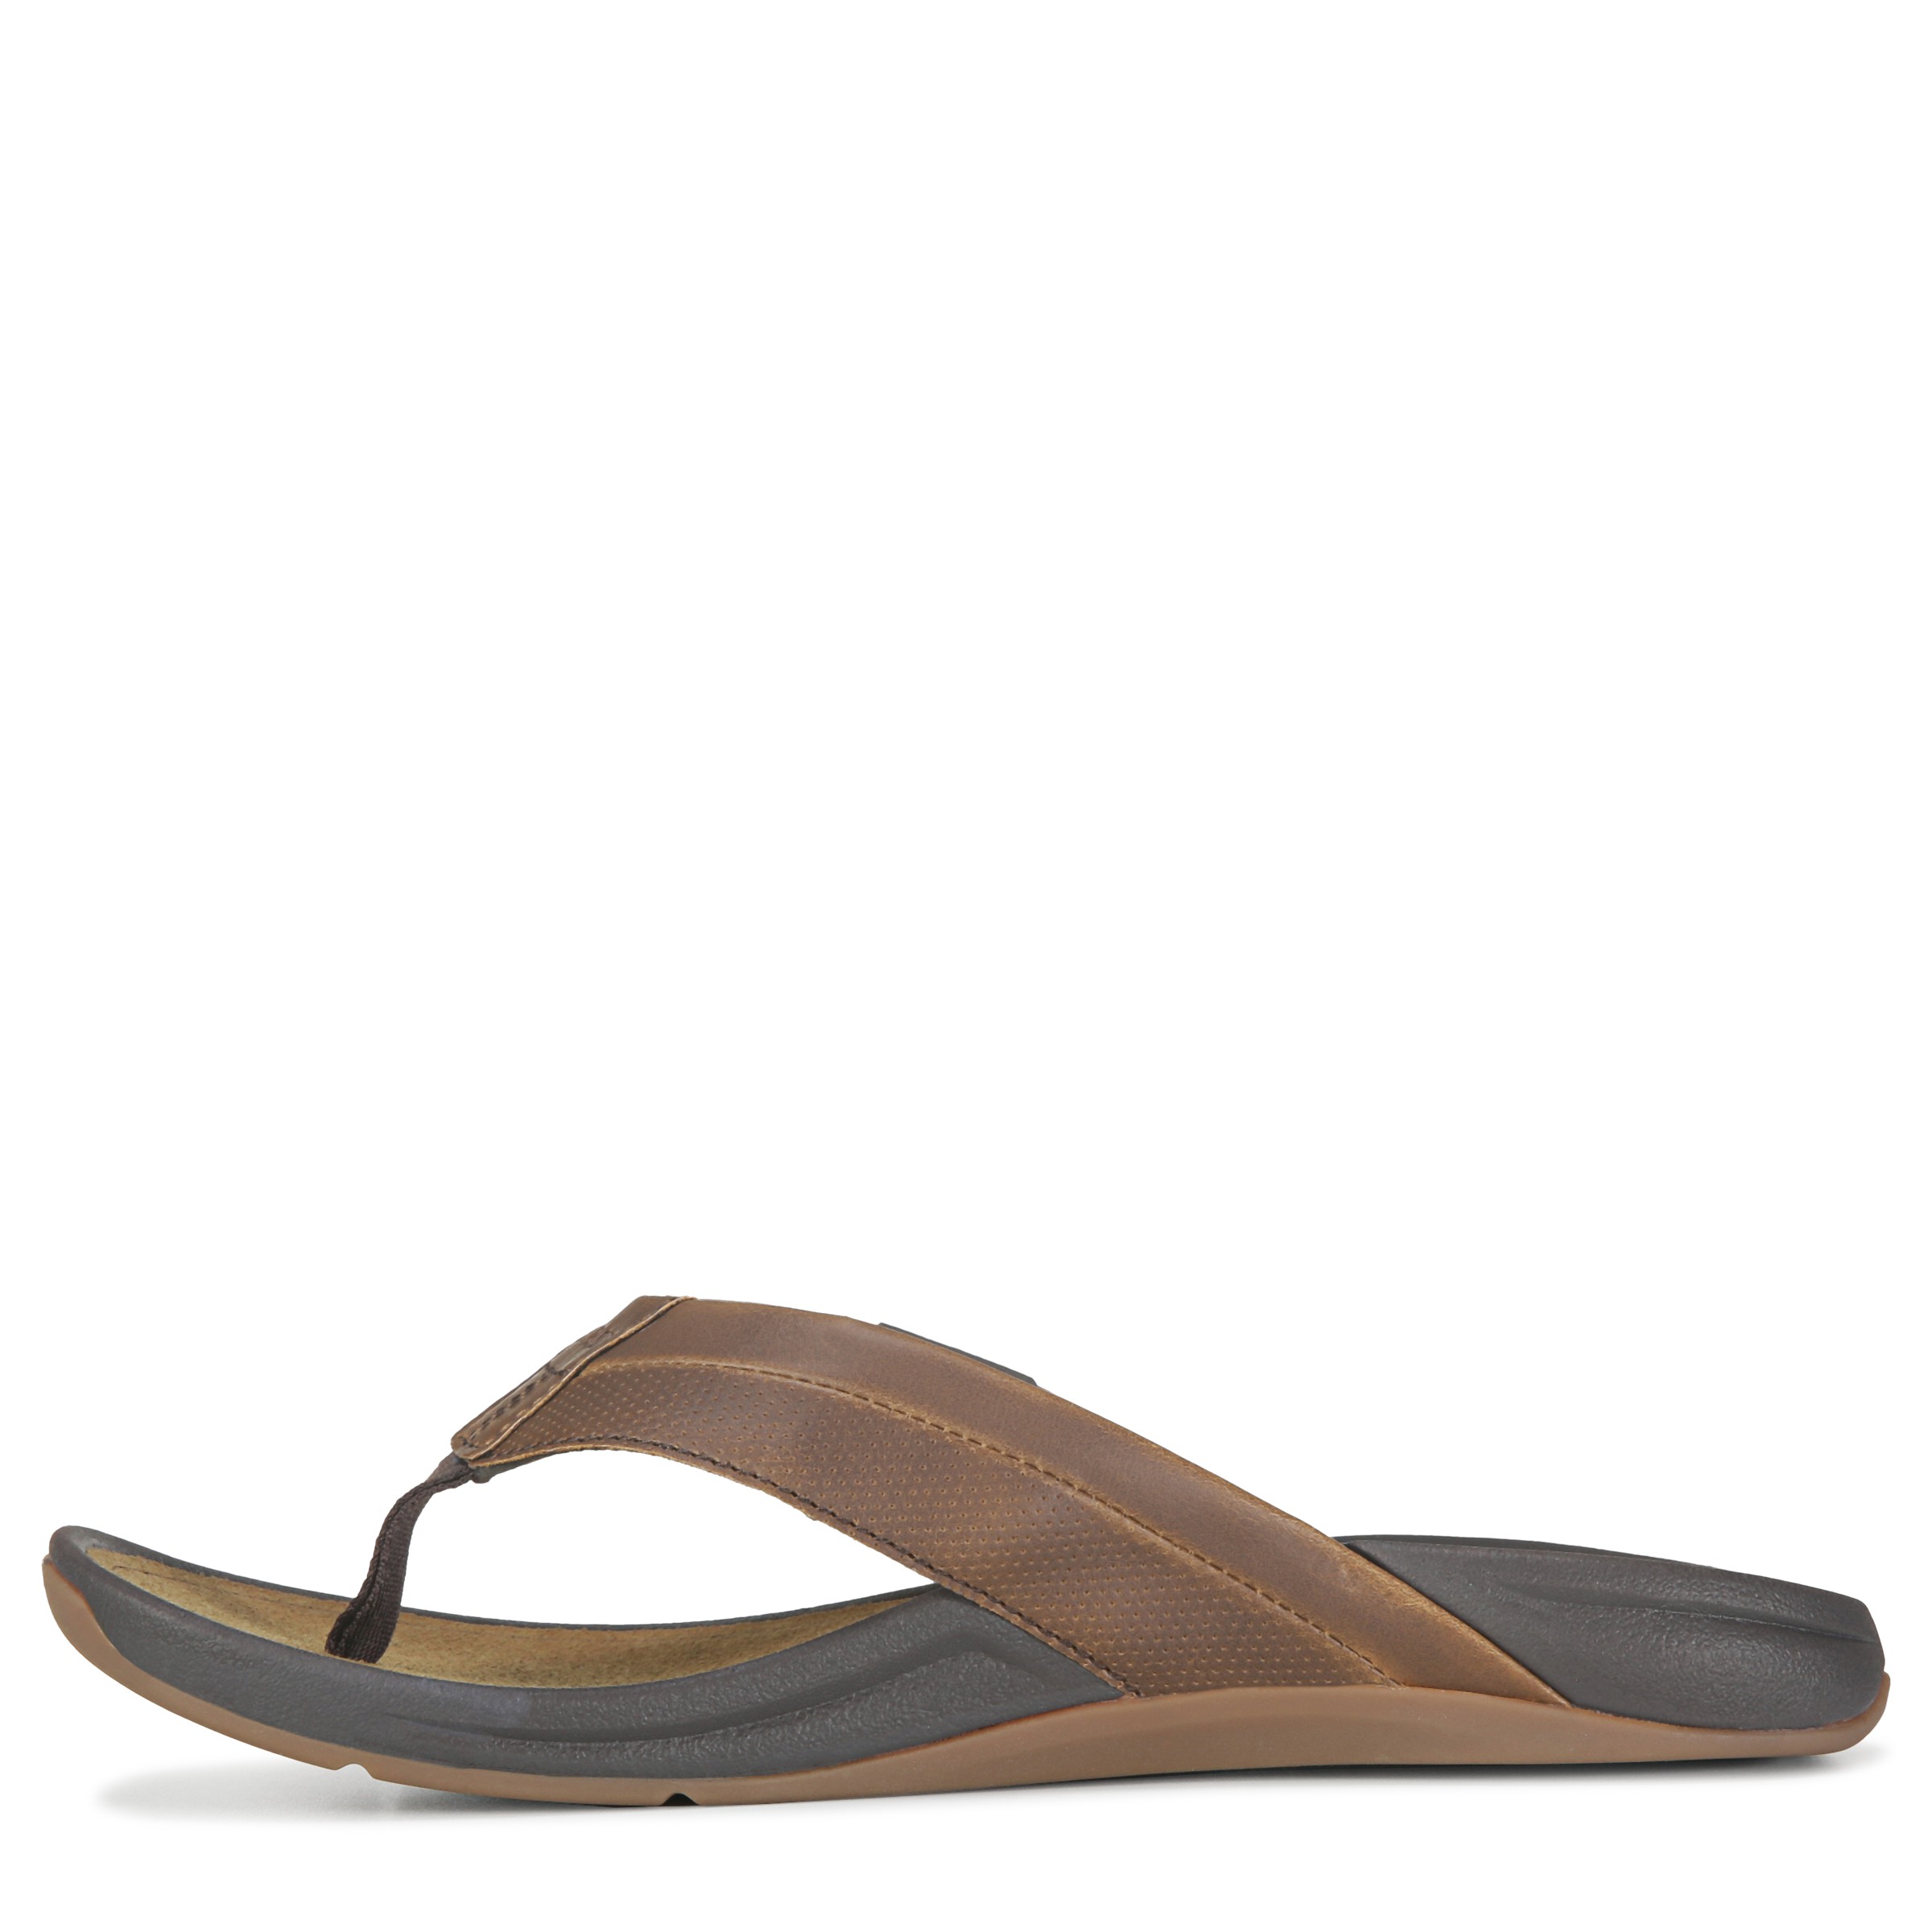 Men's San Onofre Flip Flop Sandal